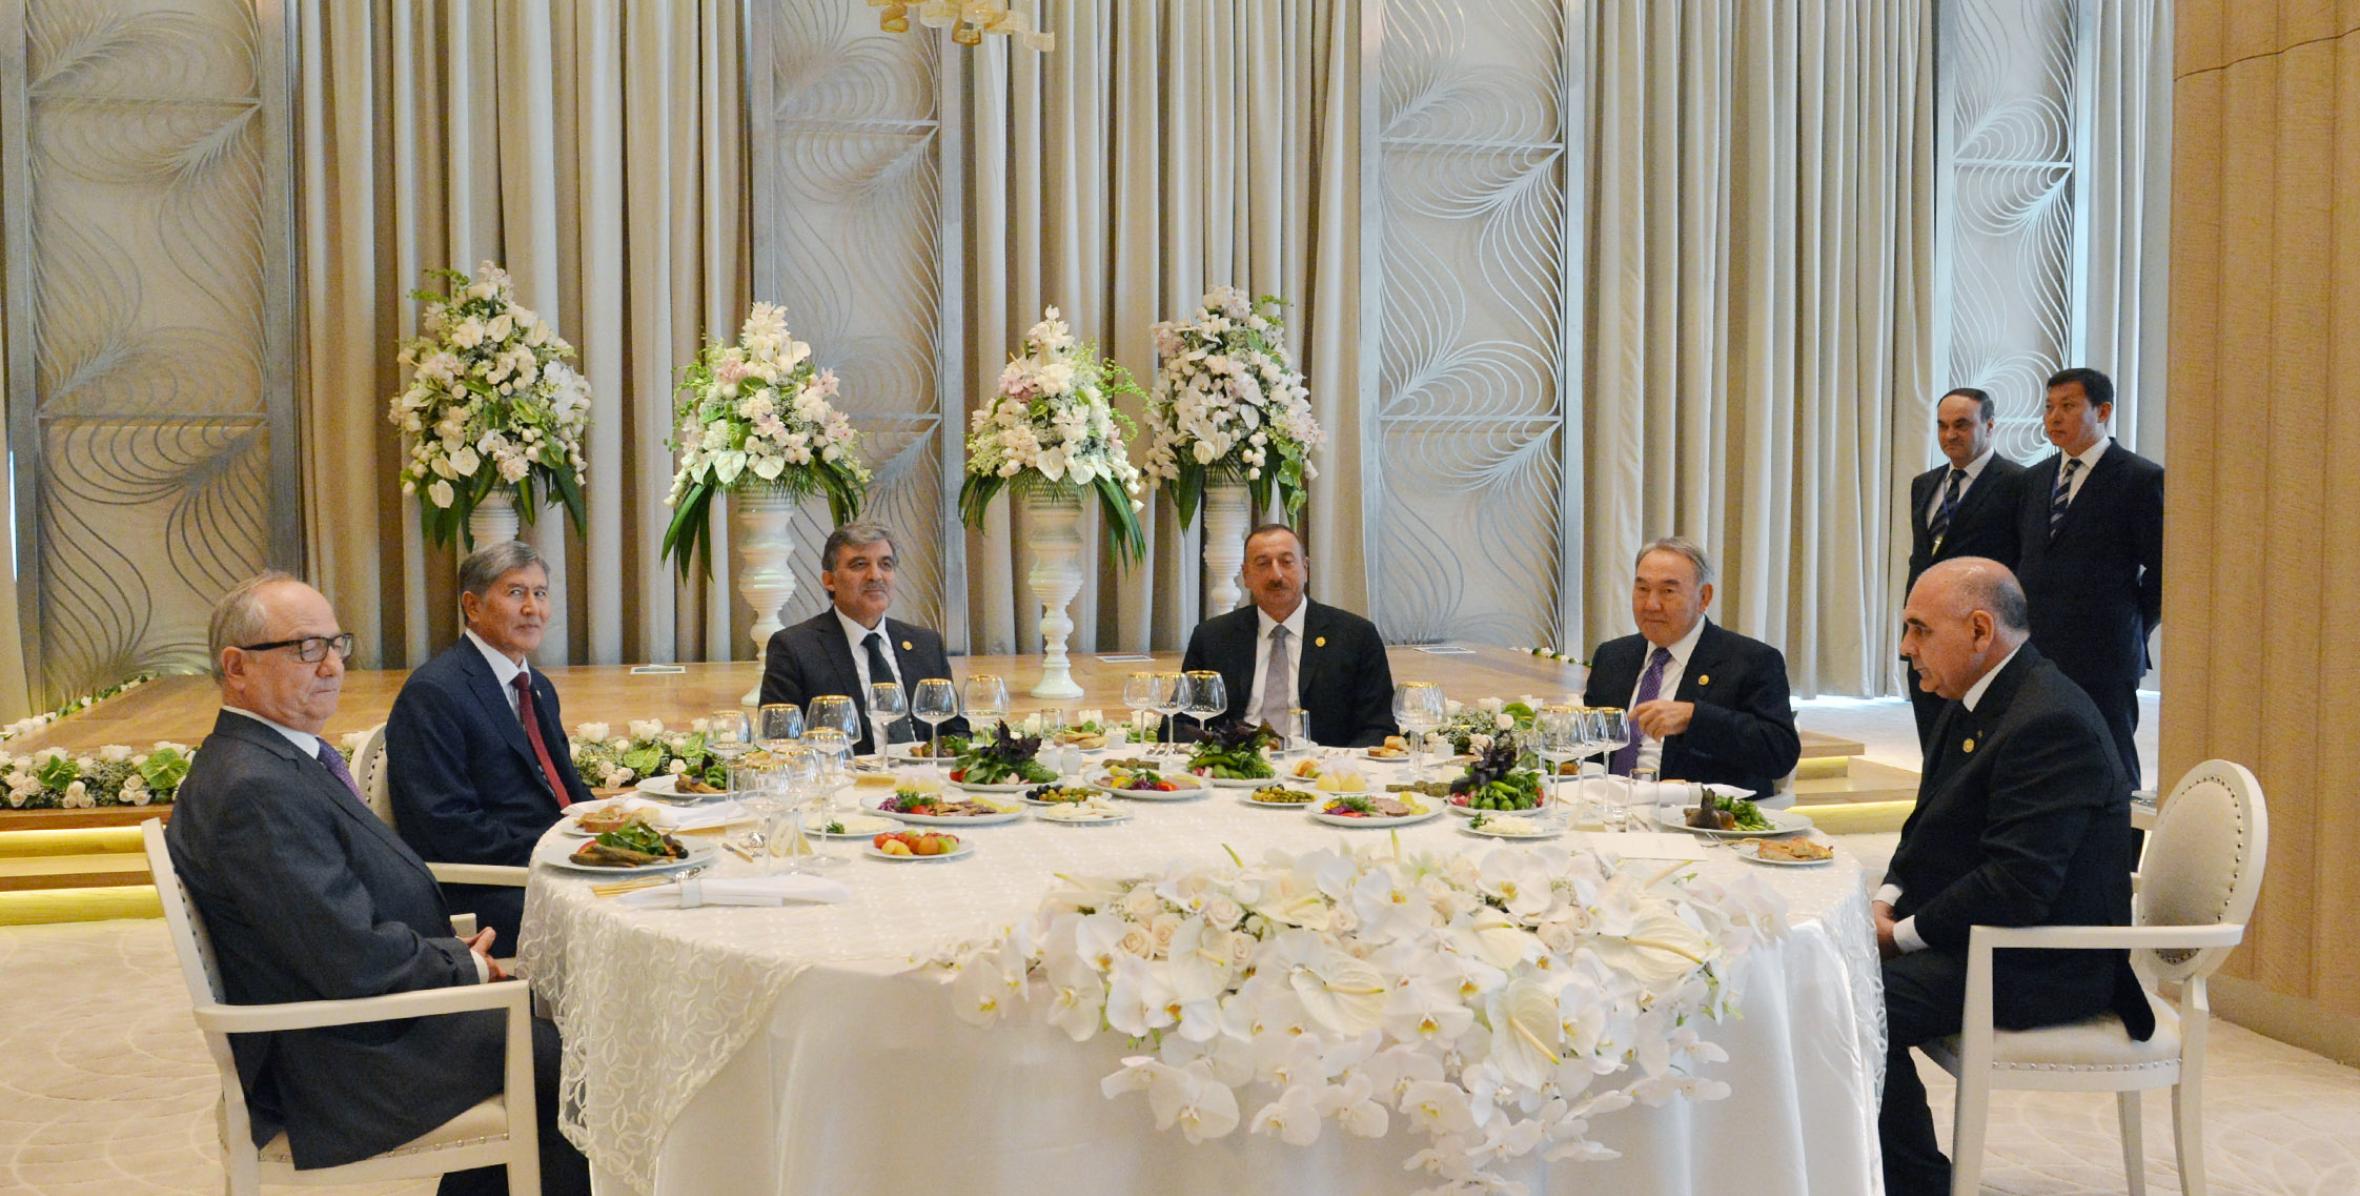 От имени Ильхама Алиева был устроен прием в честь глав государств, участвовавших в III саммите Совета сотрудничества тюркоязычных государств